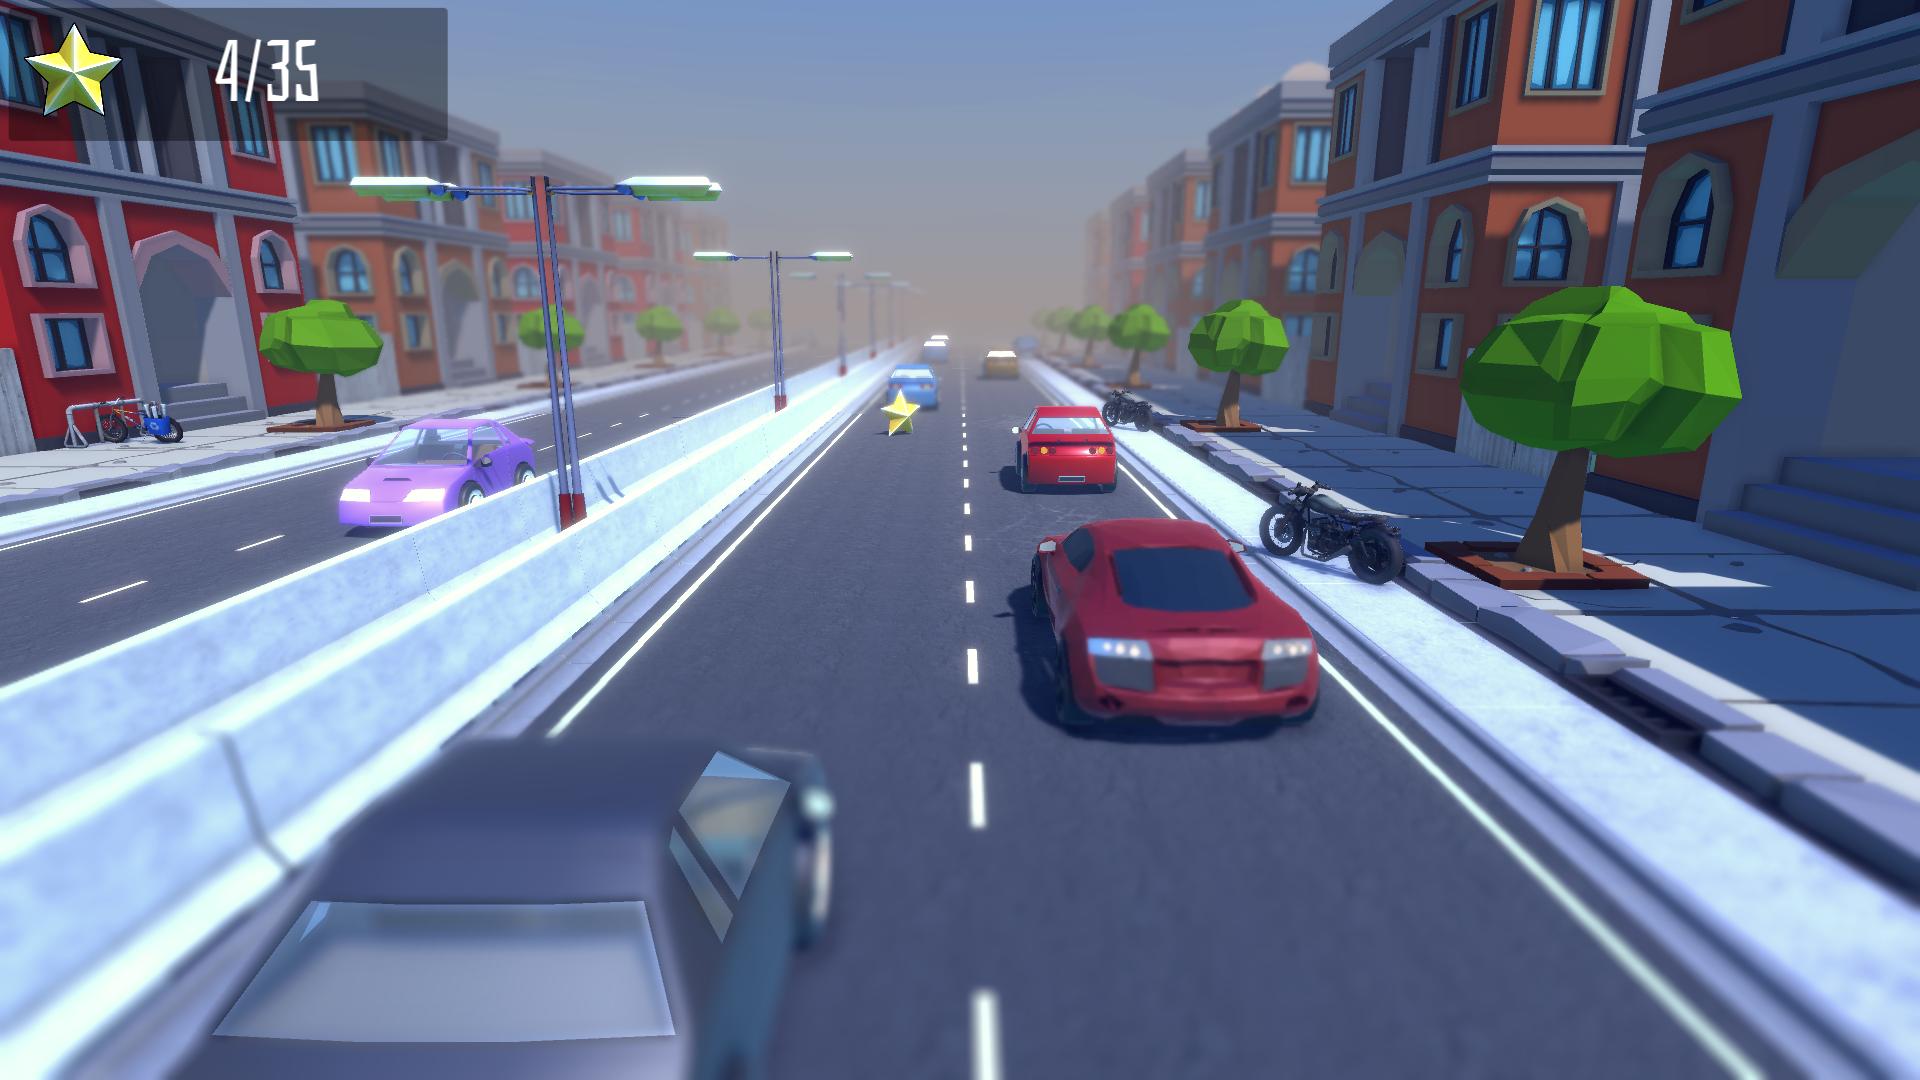 Highway of death screenshot